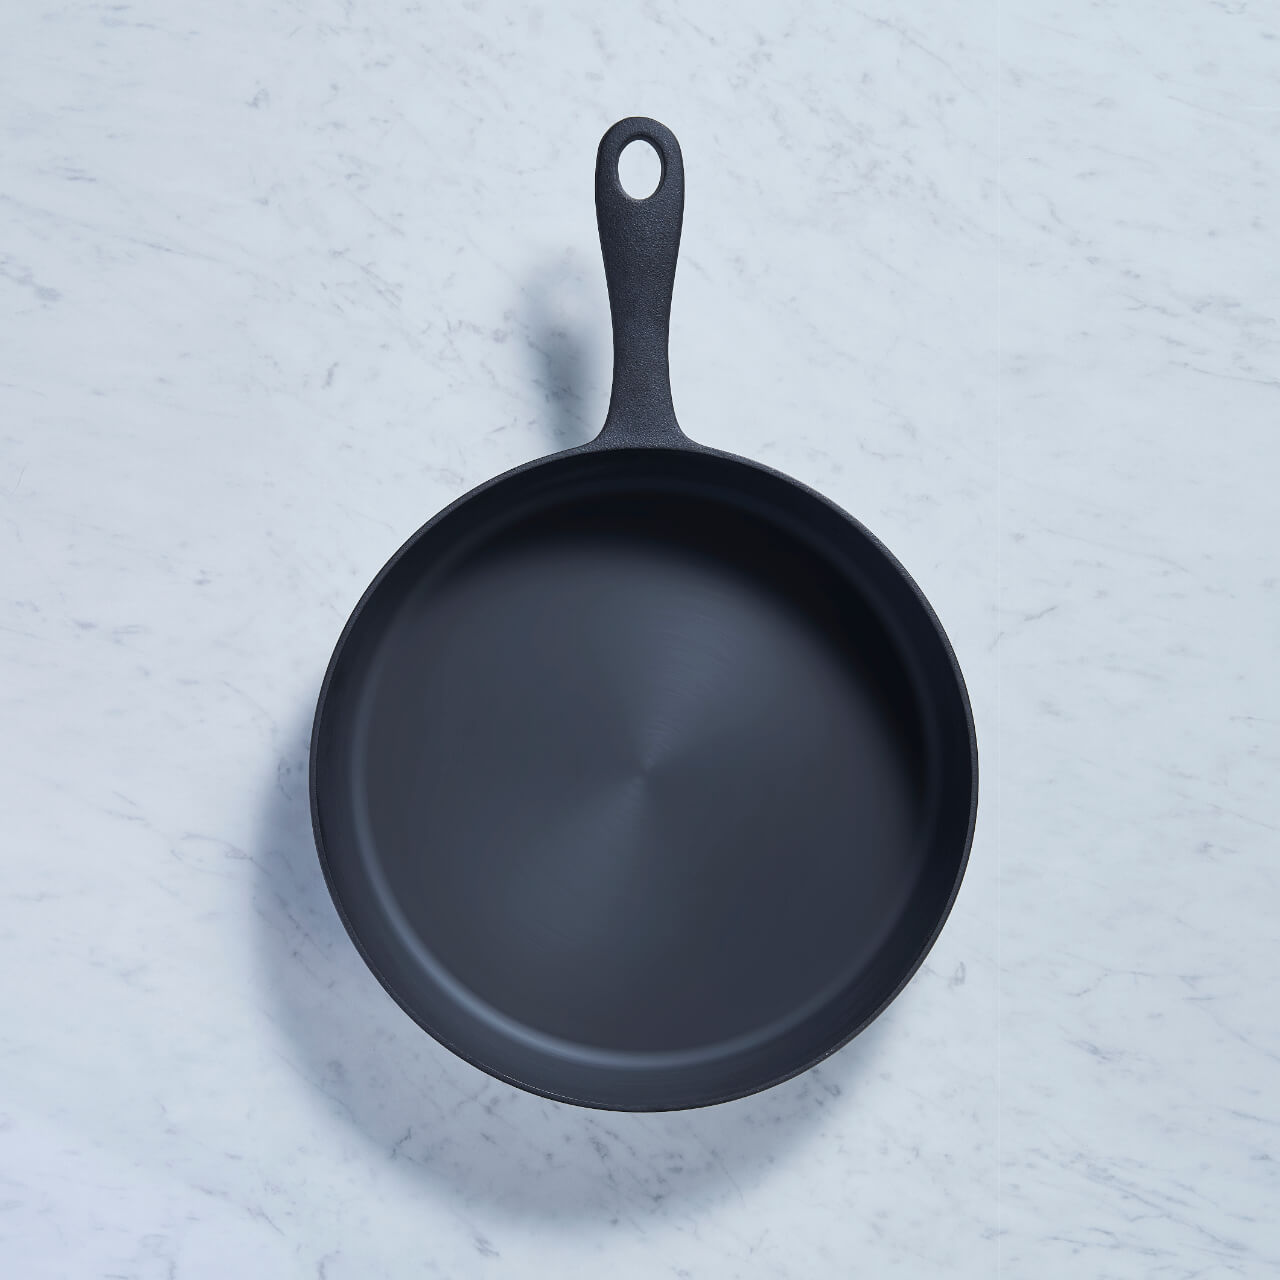 黑平鍋多角度展示 - 『從不同角度展示黑平鍋的設計和細節，突出其優雅外觀和精良工藝。』